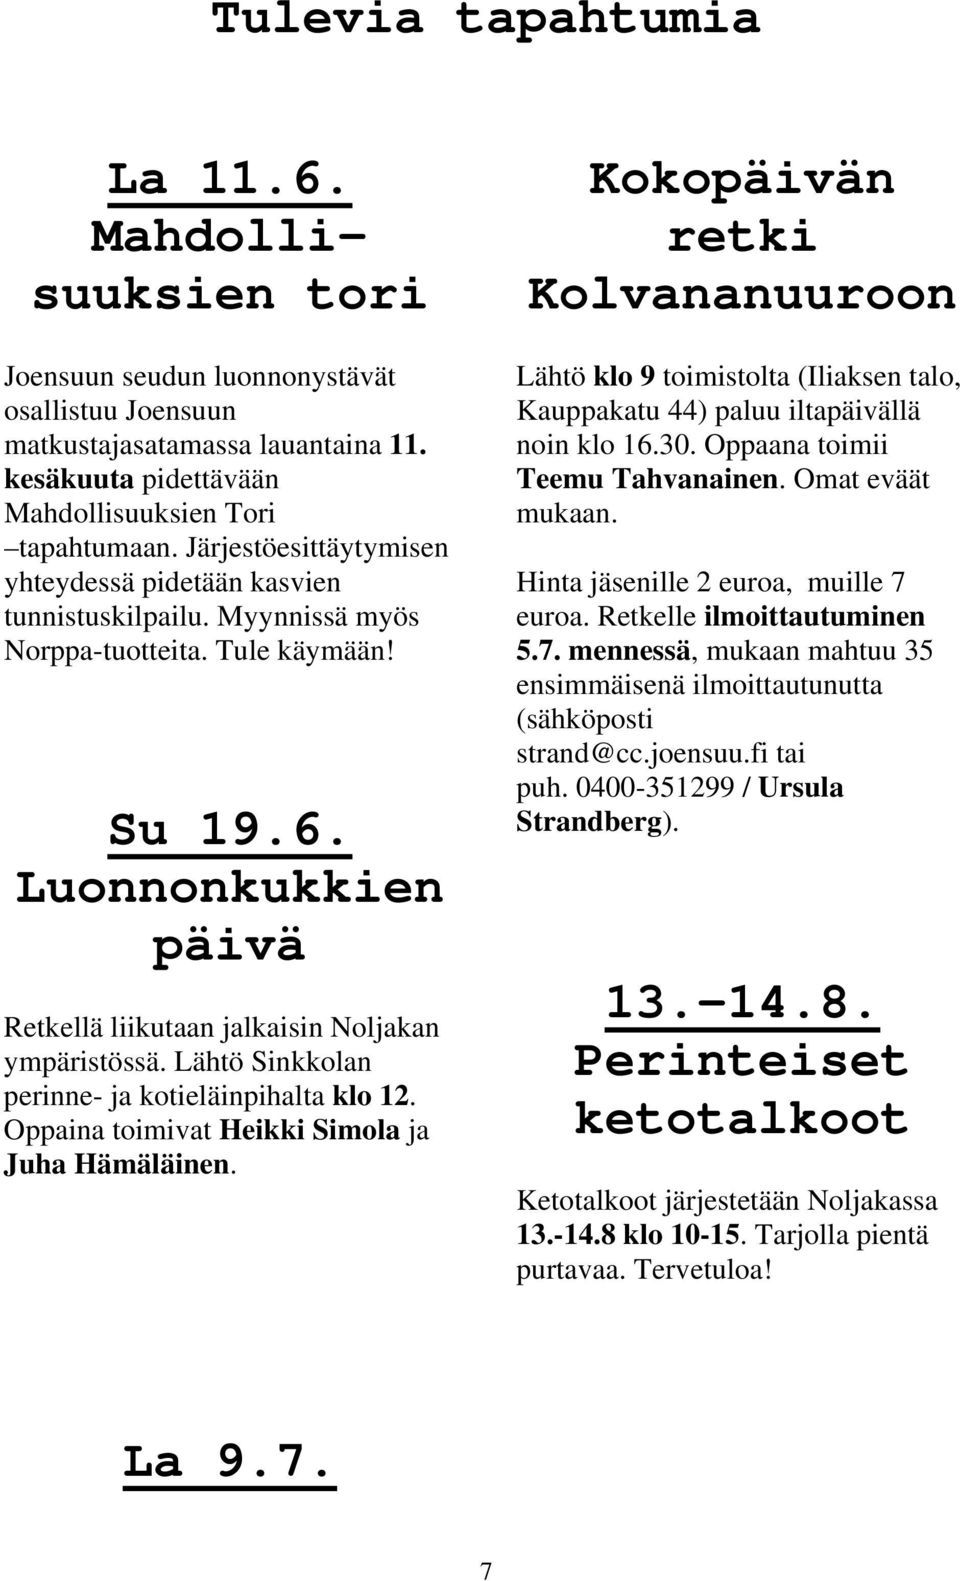 Lähtö Sinkkolan perinne- ja kotieläinpihalta klo 12. Oppaina toimivat Heikki Simola ja Juha Hämäläinen.